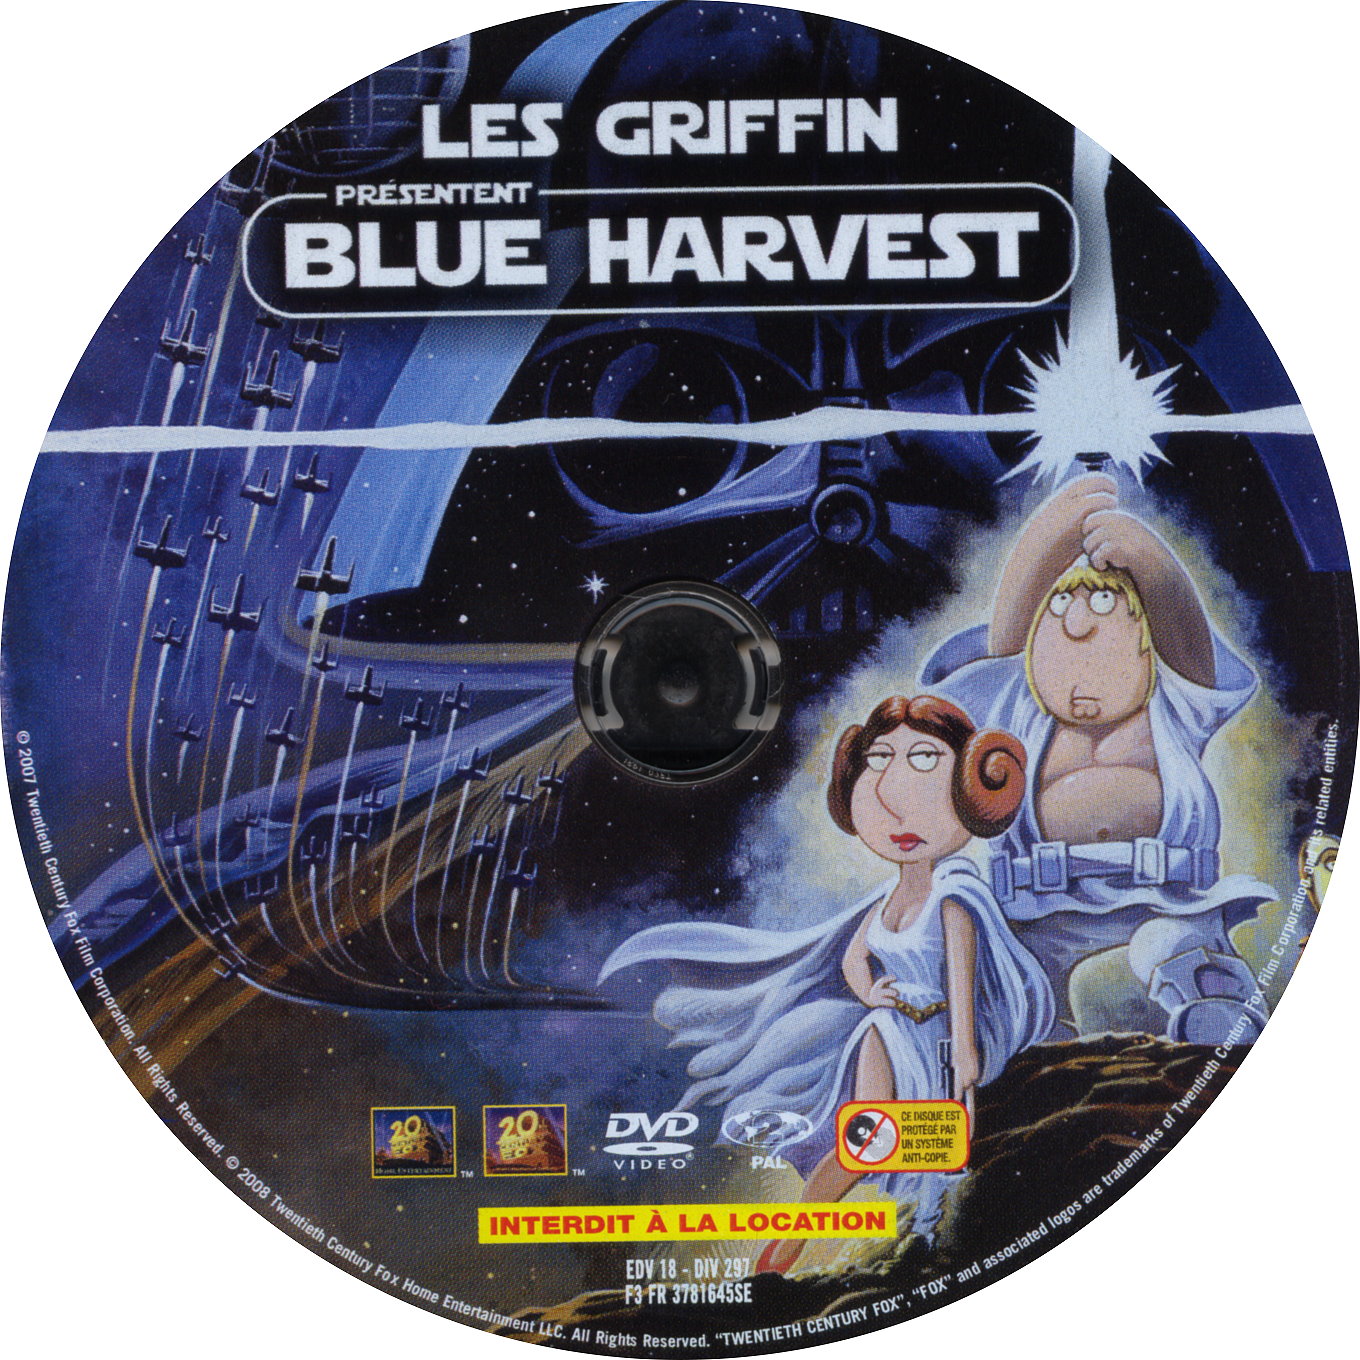 Les Griffin prsentent Blue Harvest